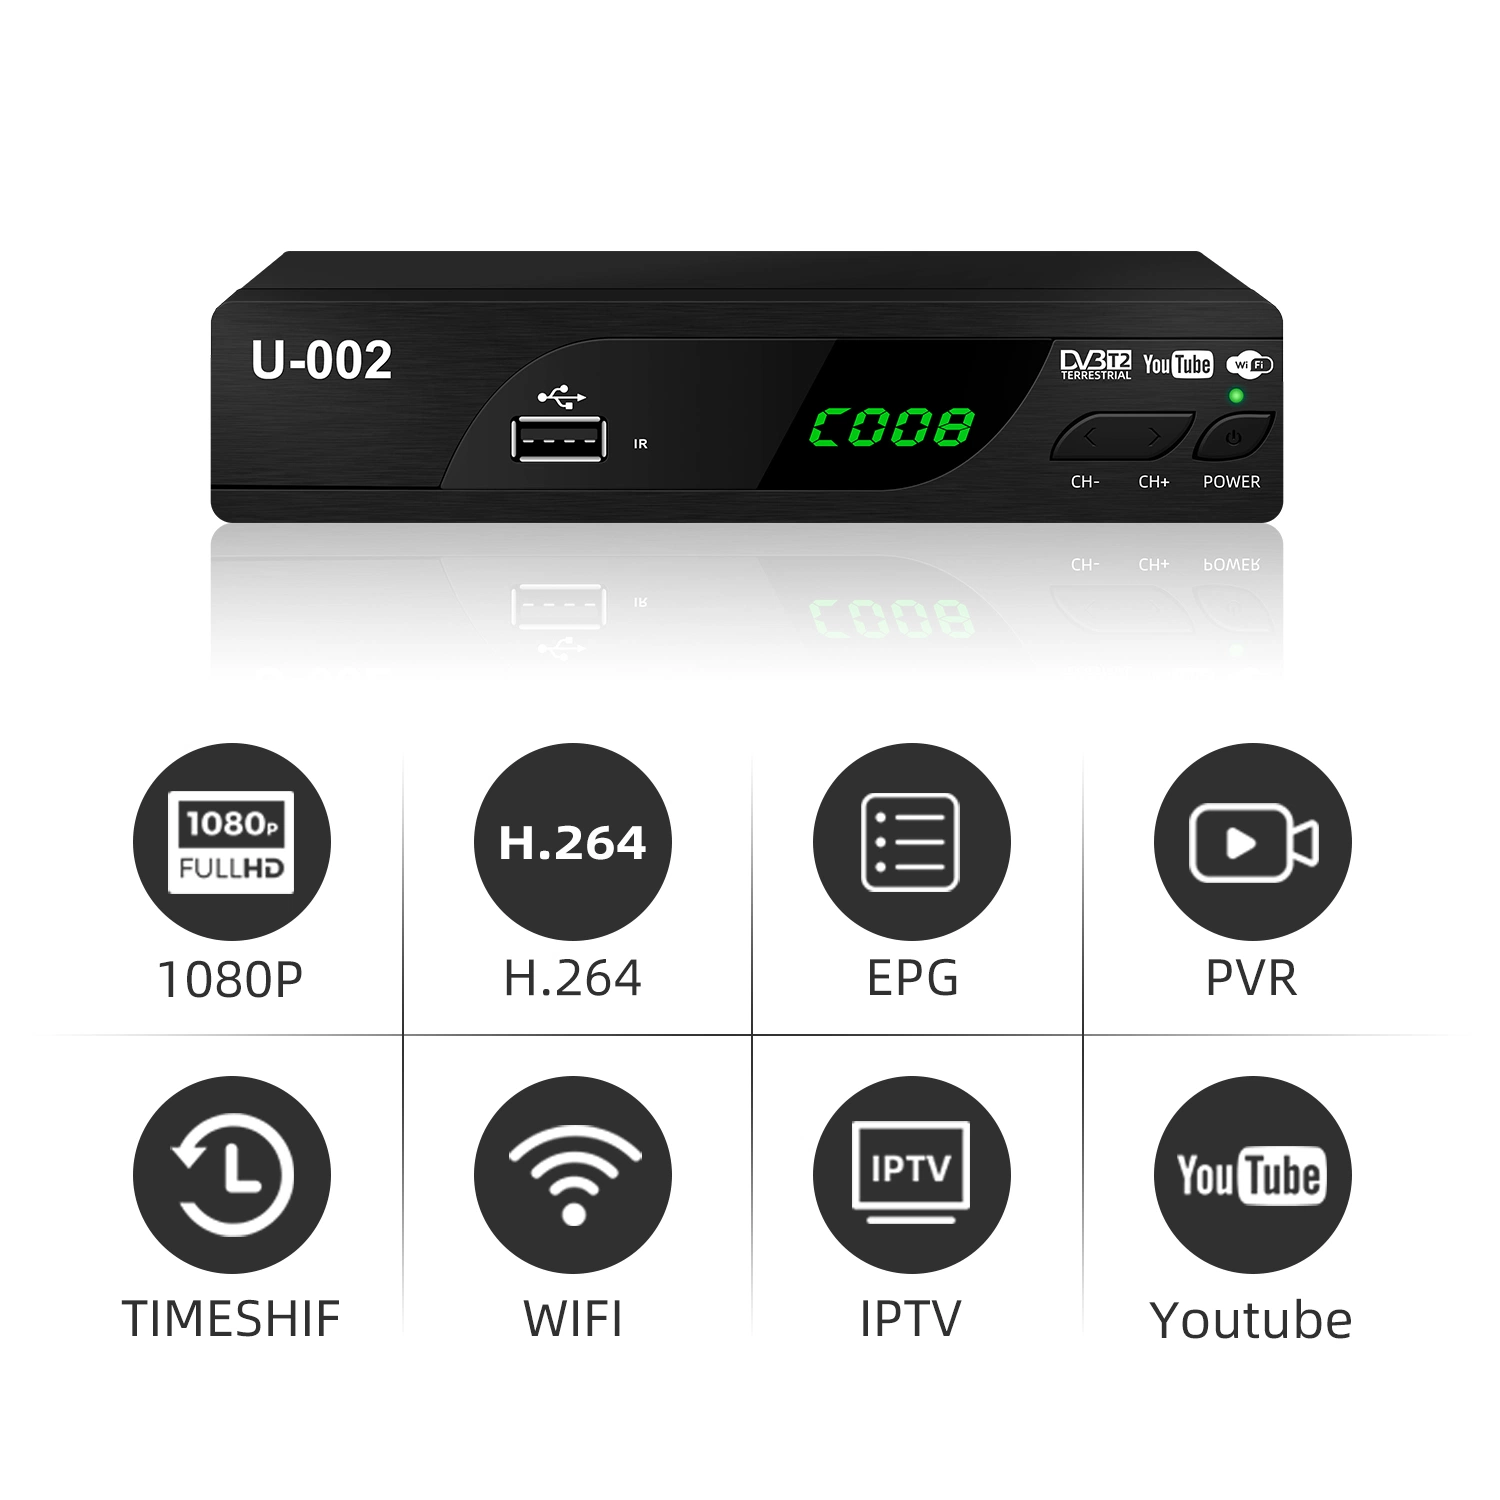 جهاز فك تشفير DVB T2 عالي الجودة مع WiFi YouTube لإندونيسيا